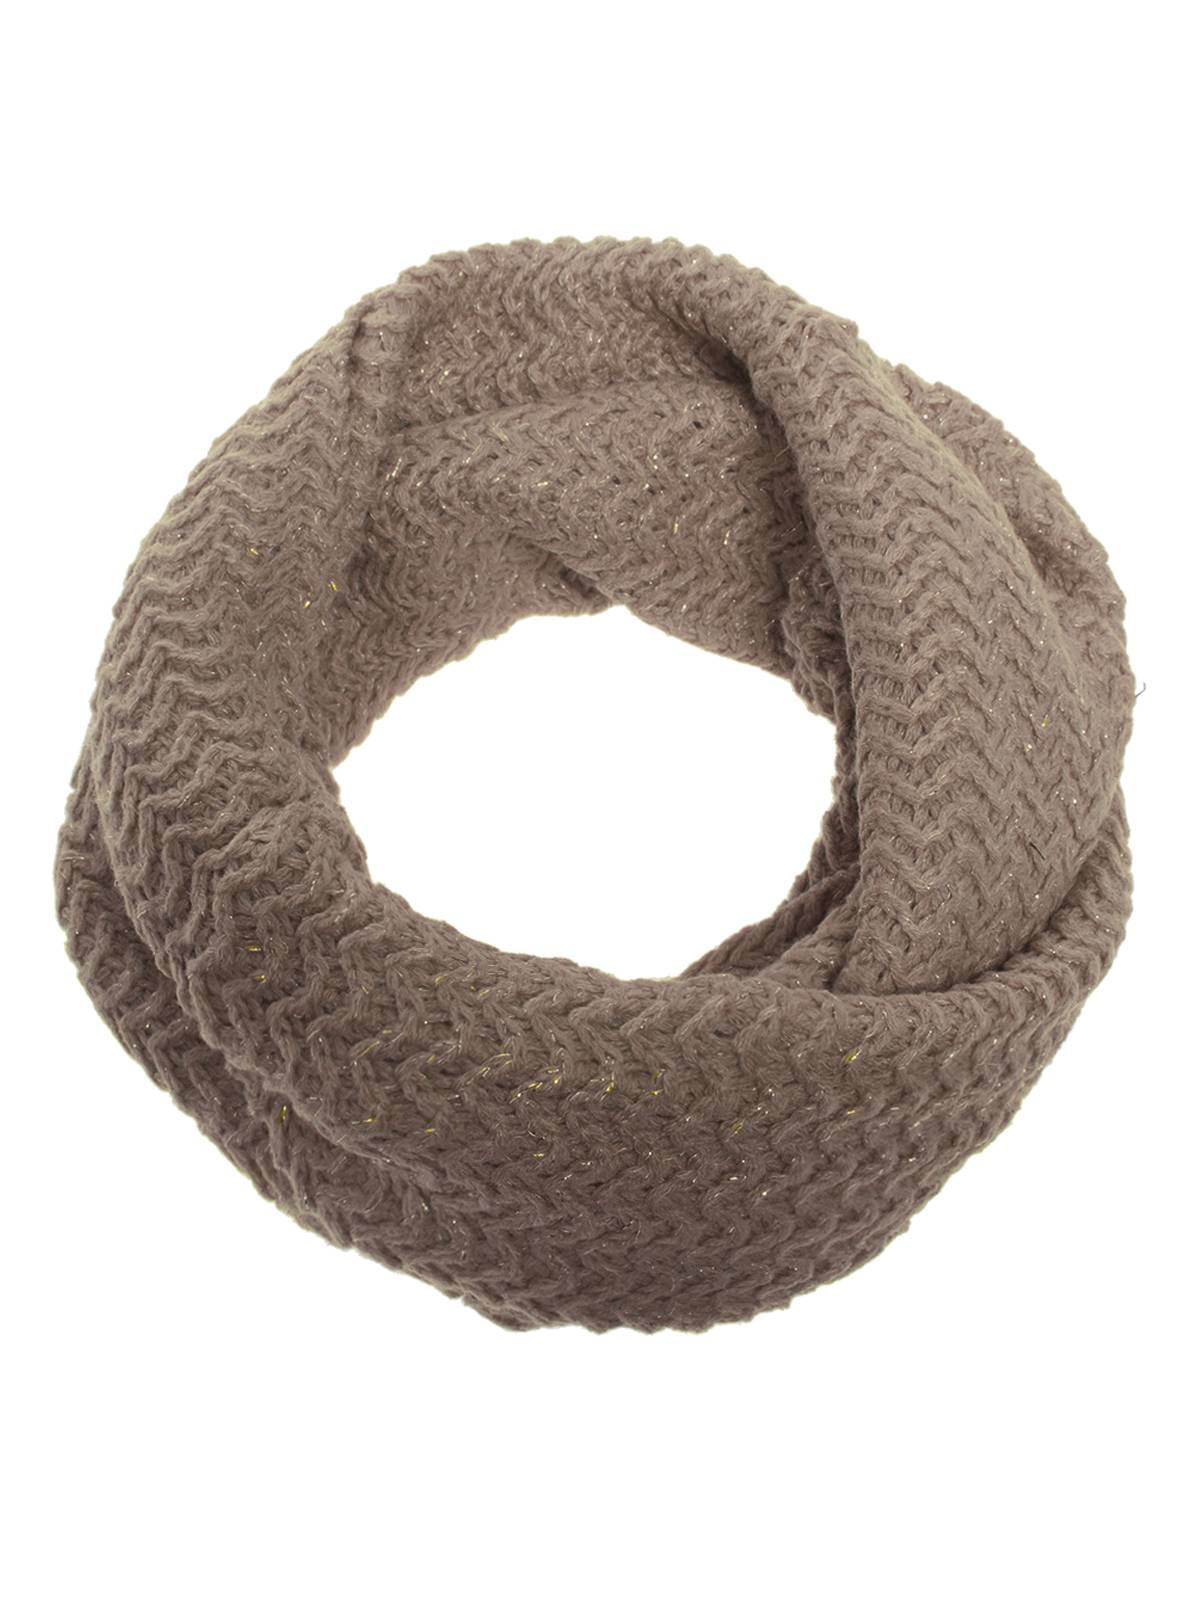 Reversible Black Cream Brown Snood Tube Scarf Infinity Loop Knitted Loose Knit 